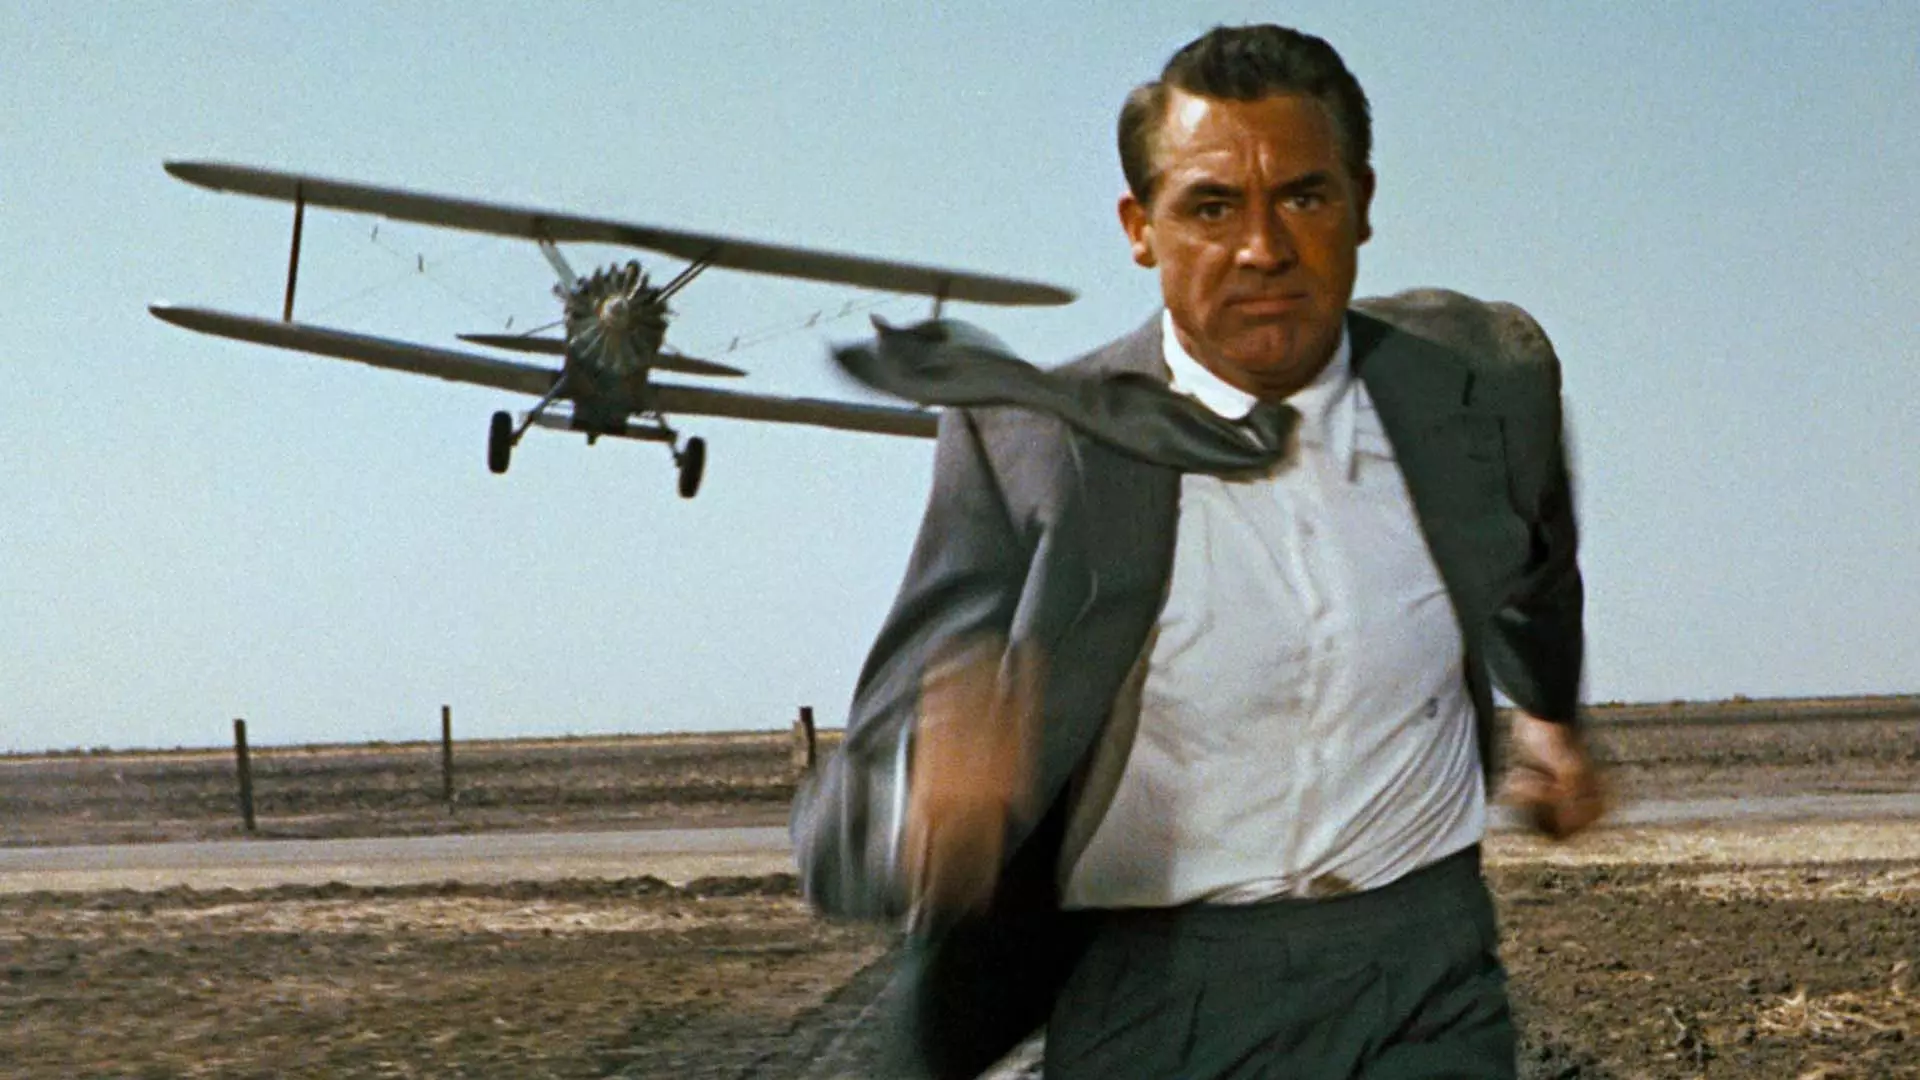 کری گرنت در حال دویدن و فرار کردن از هواپیما در فیلم North by Northwest